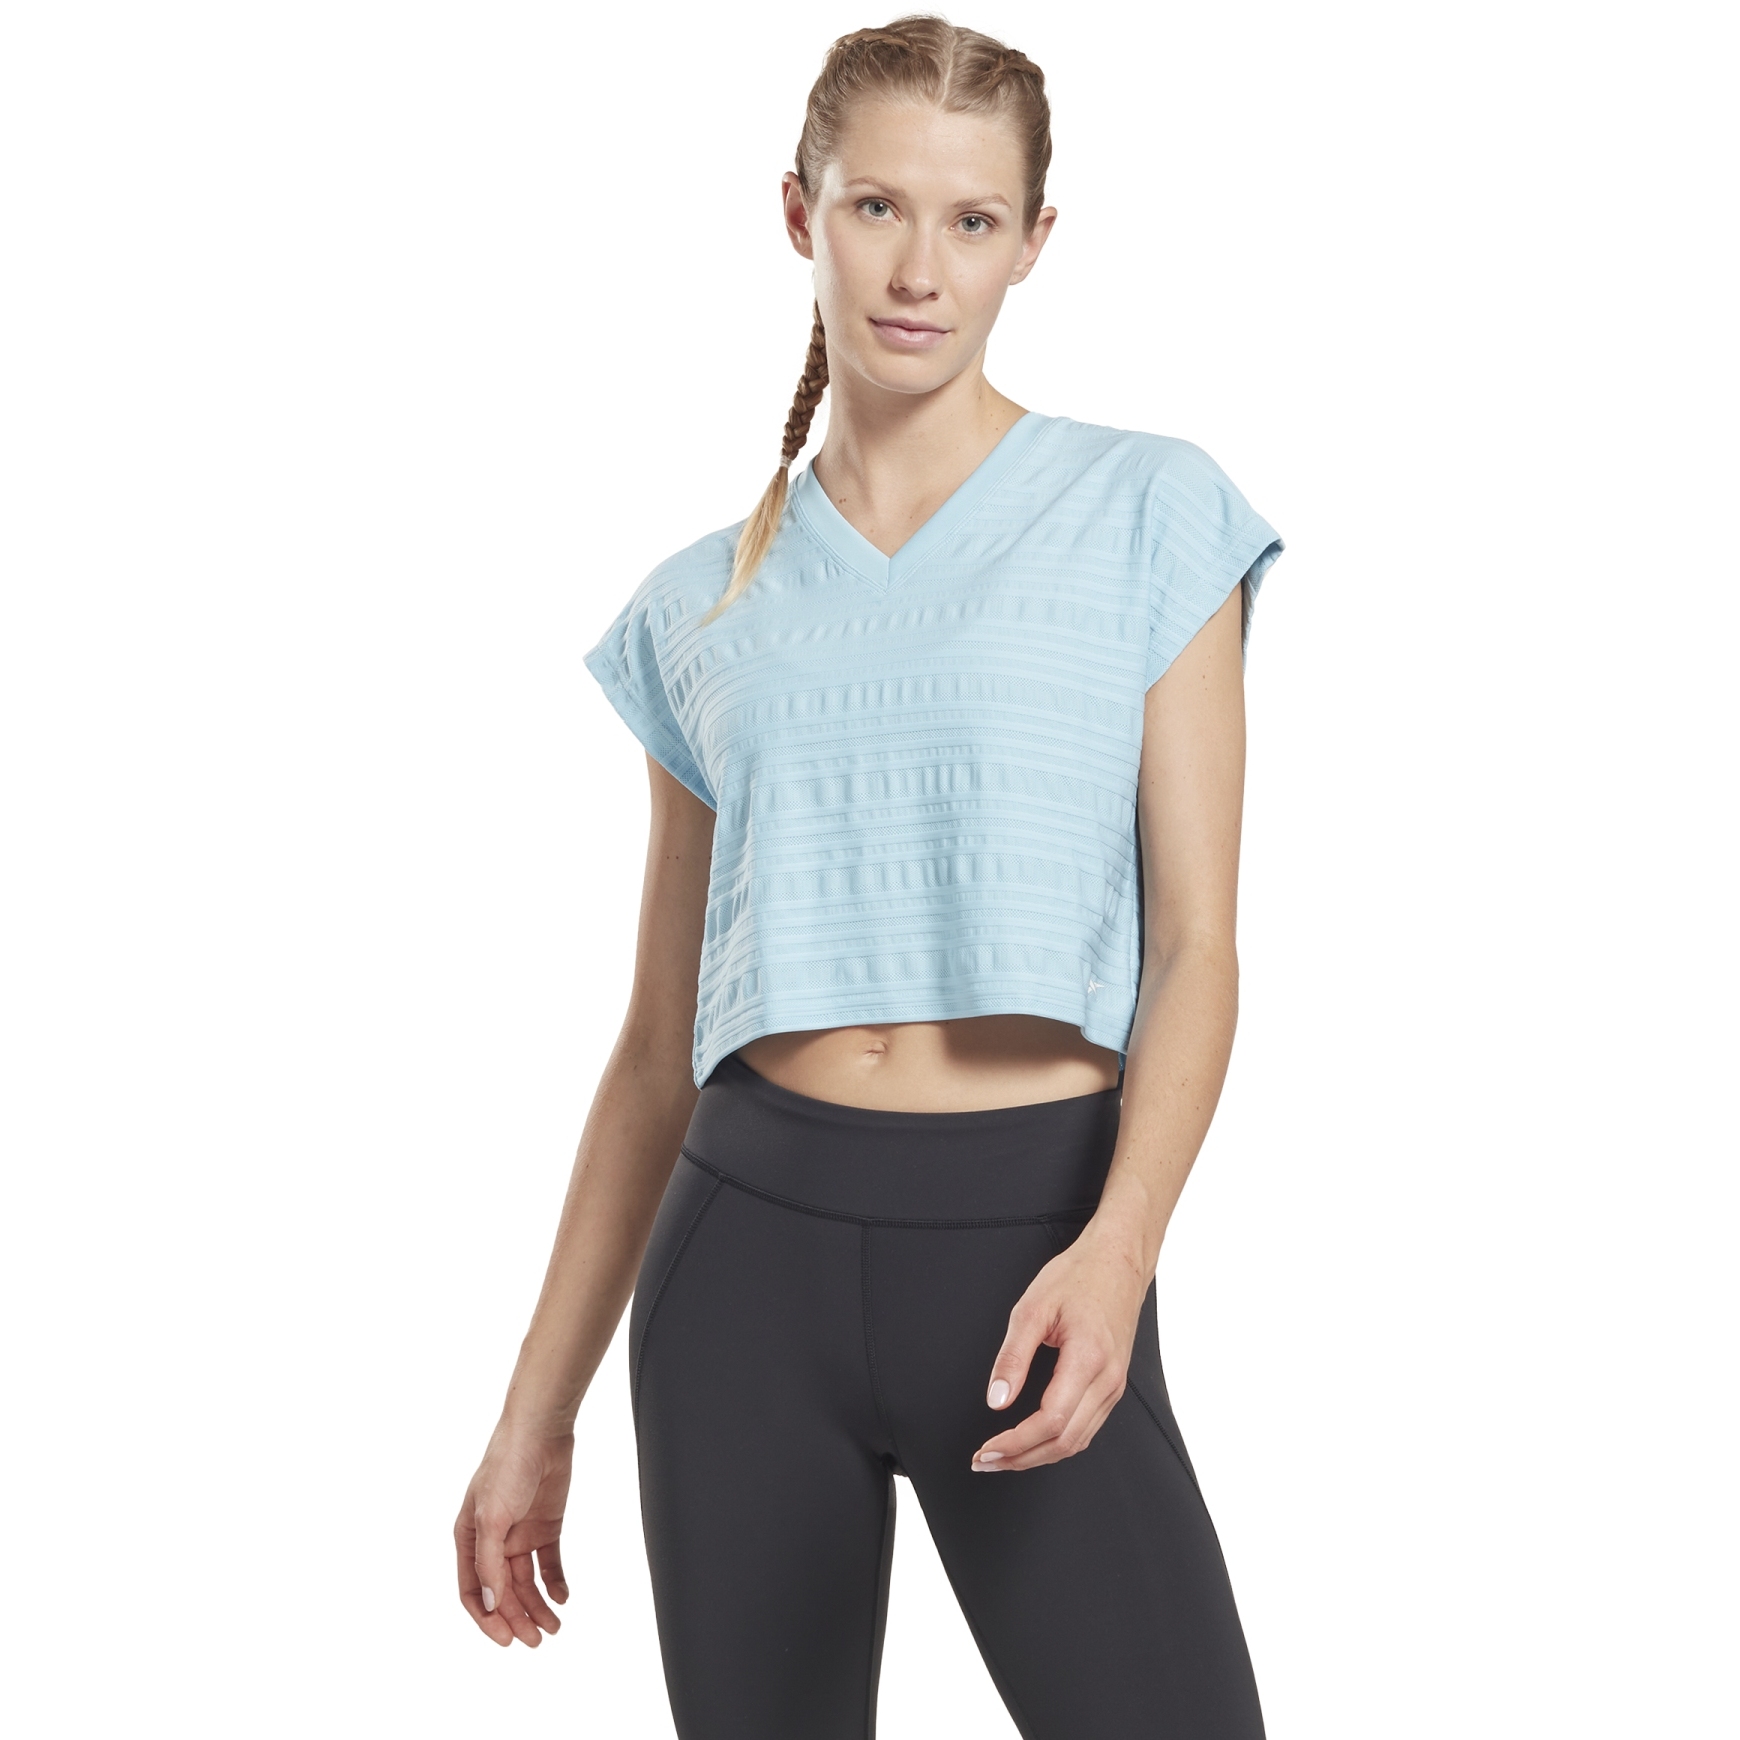 Produktbild von Reebok Perforated T-Shirt Damen - blue pearl